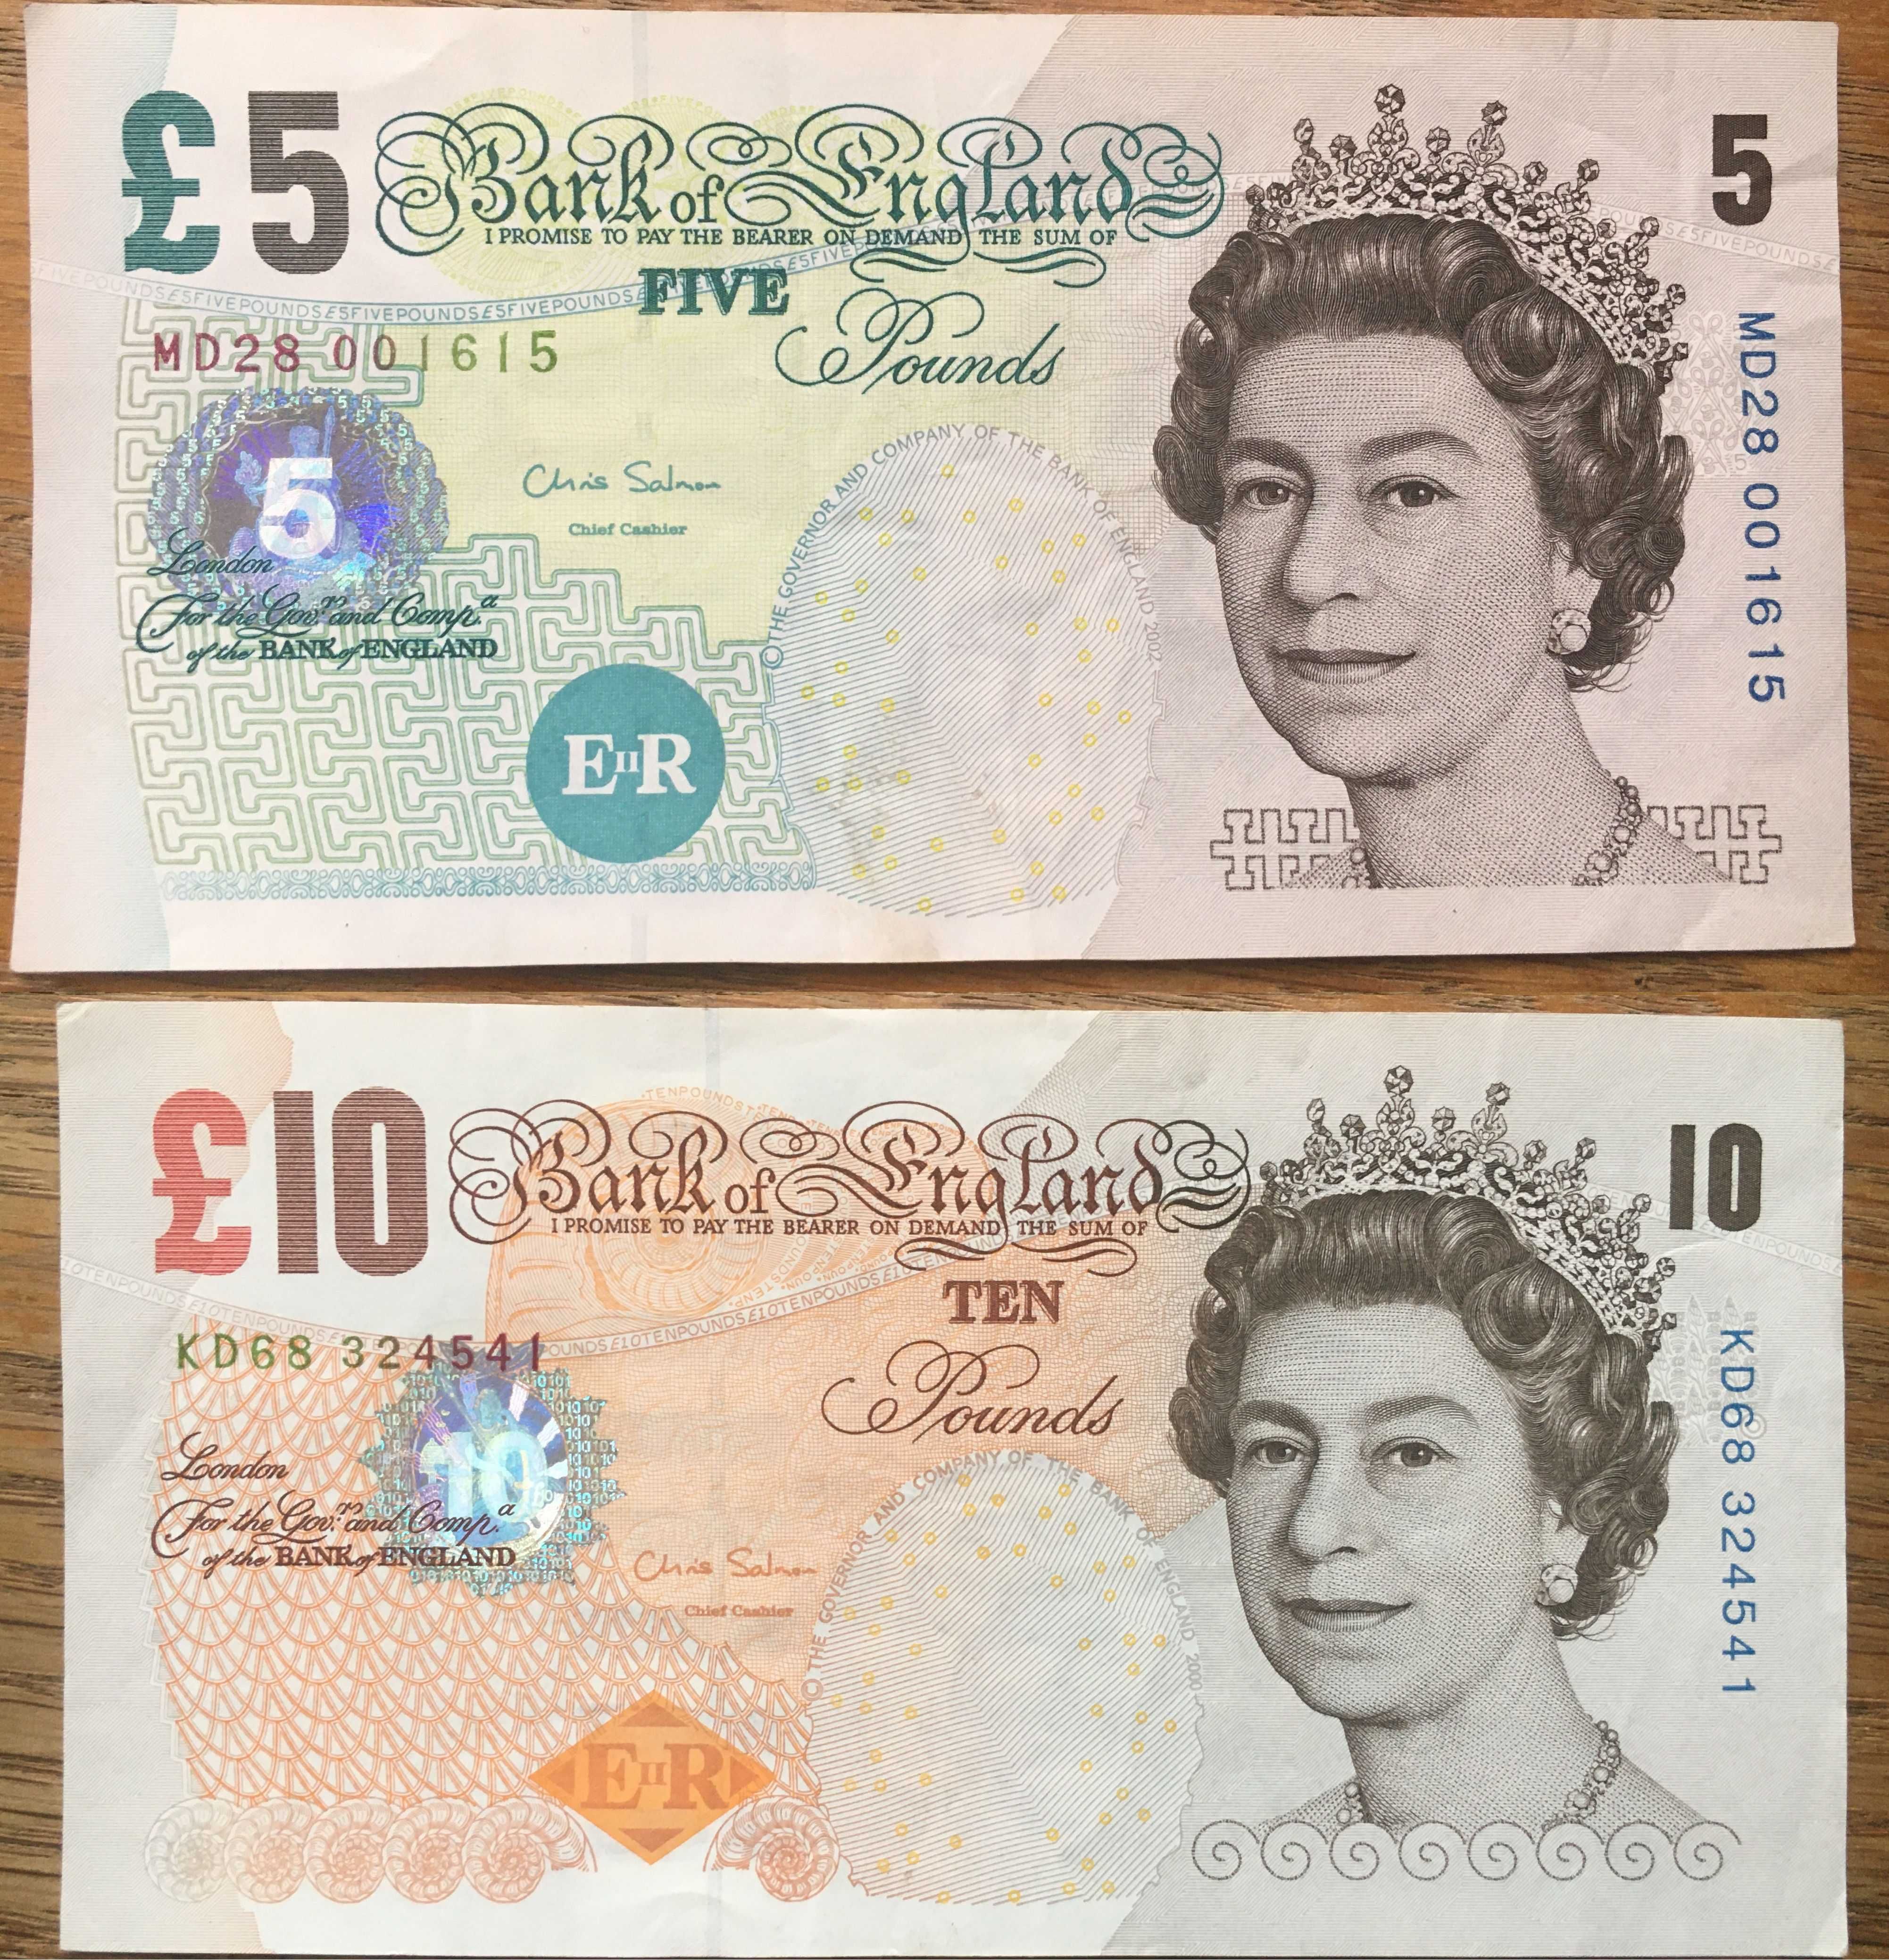 Banknot 5 £ i Banknot 10 £ Funt Funtów Anglia, wycofane, dowóz 0zł*